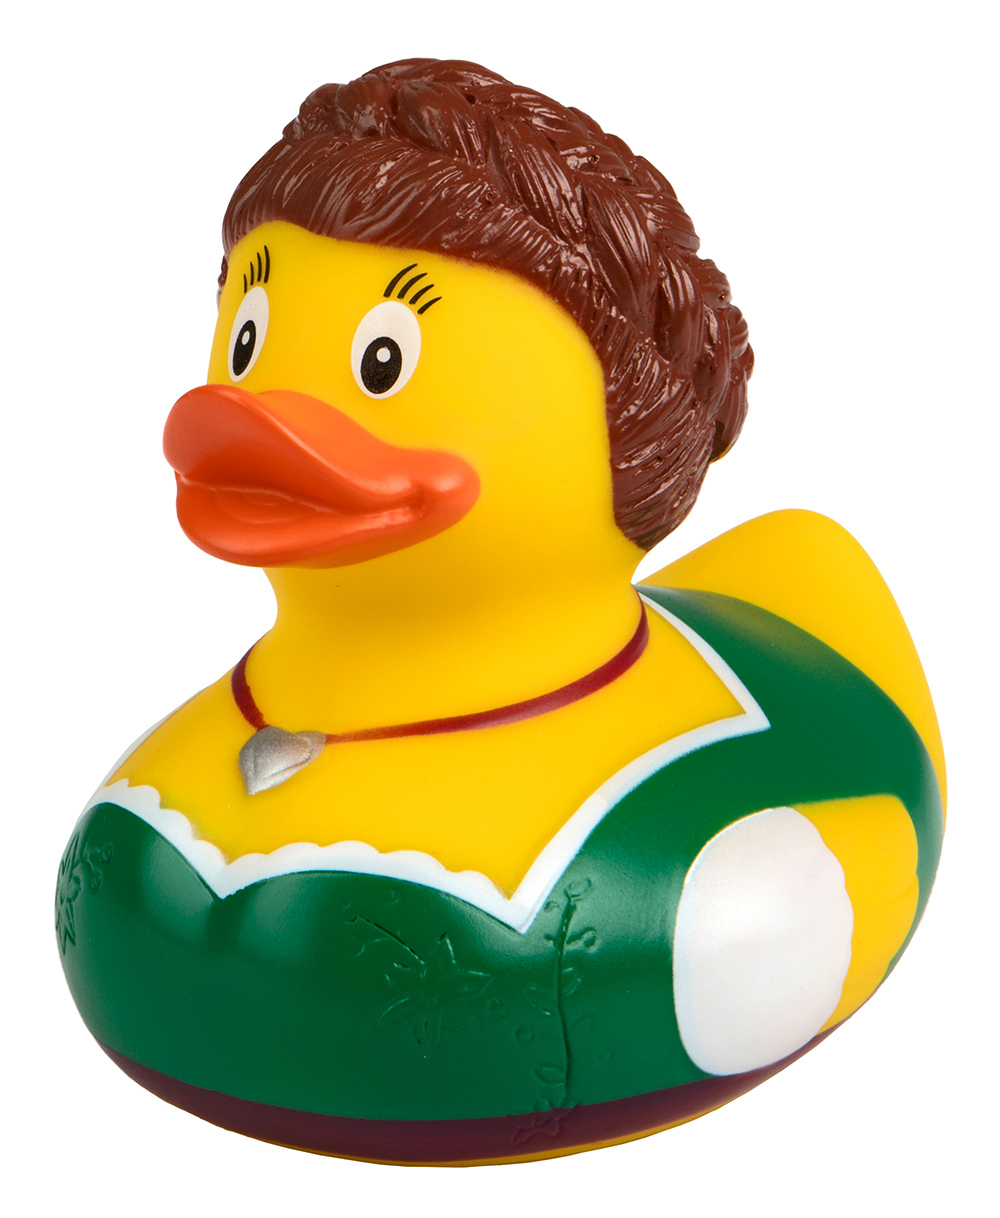 Squeaky duck Bavarian Dirndl